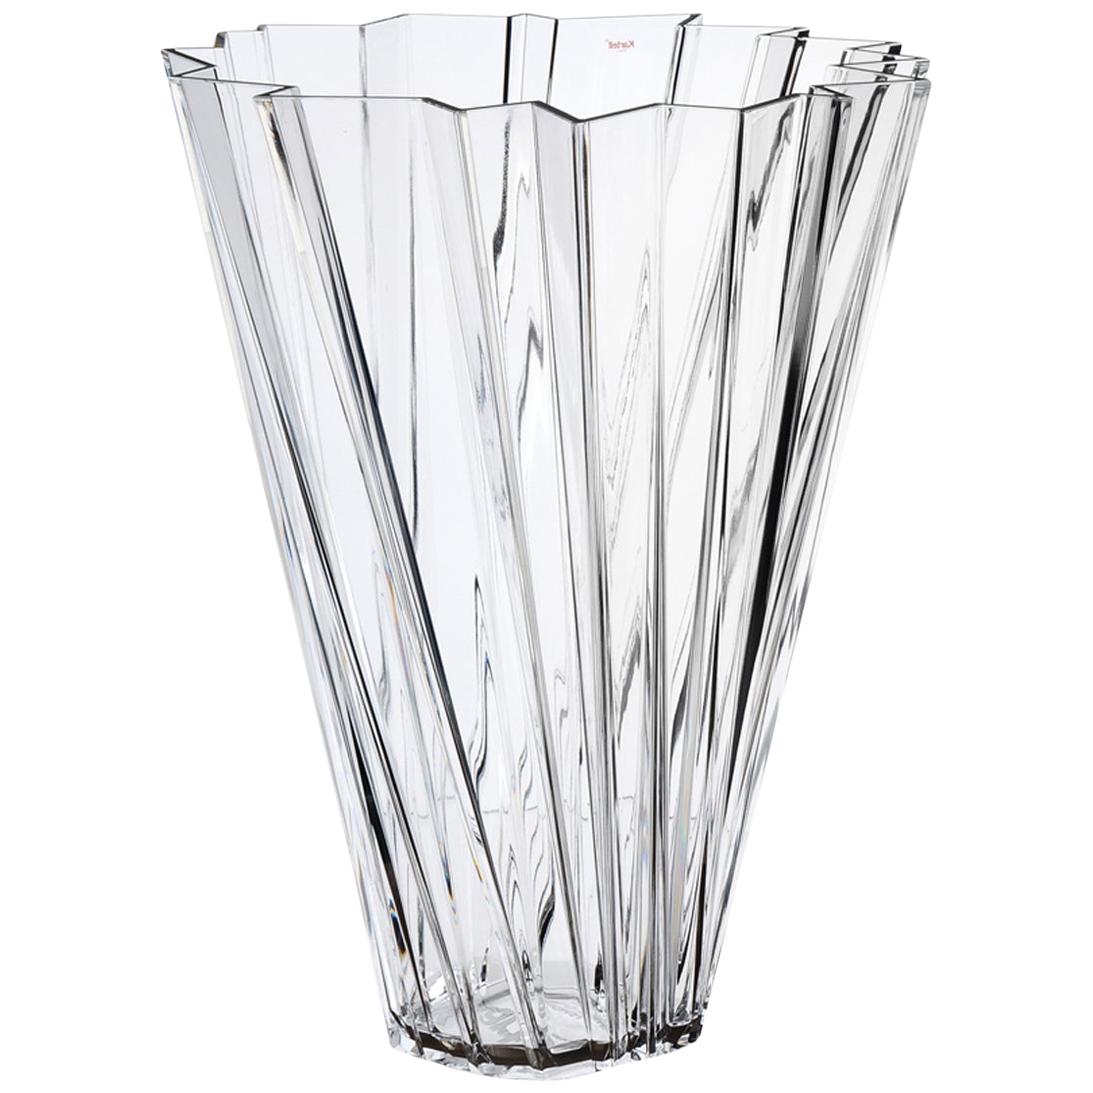 Kartell Shanghai Vase in Crystal by Mario Bellini